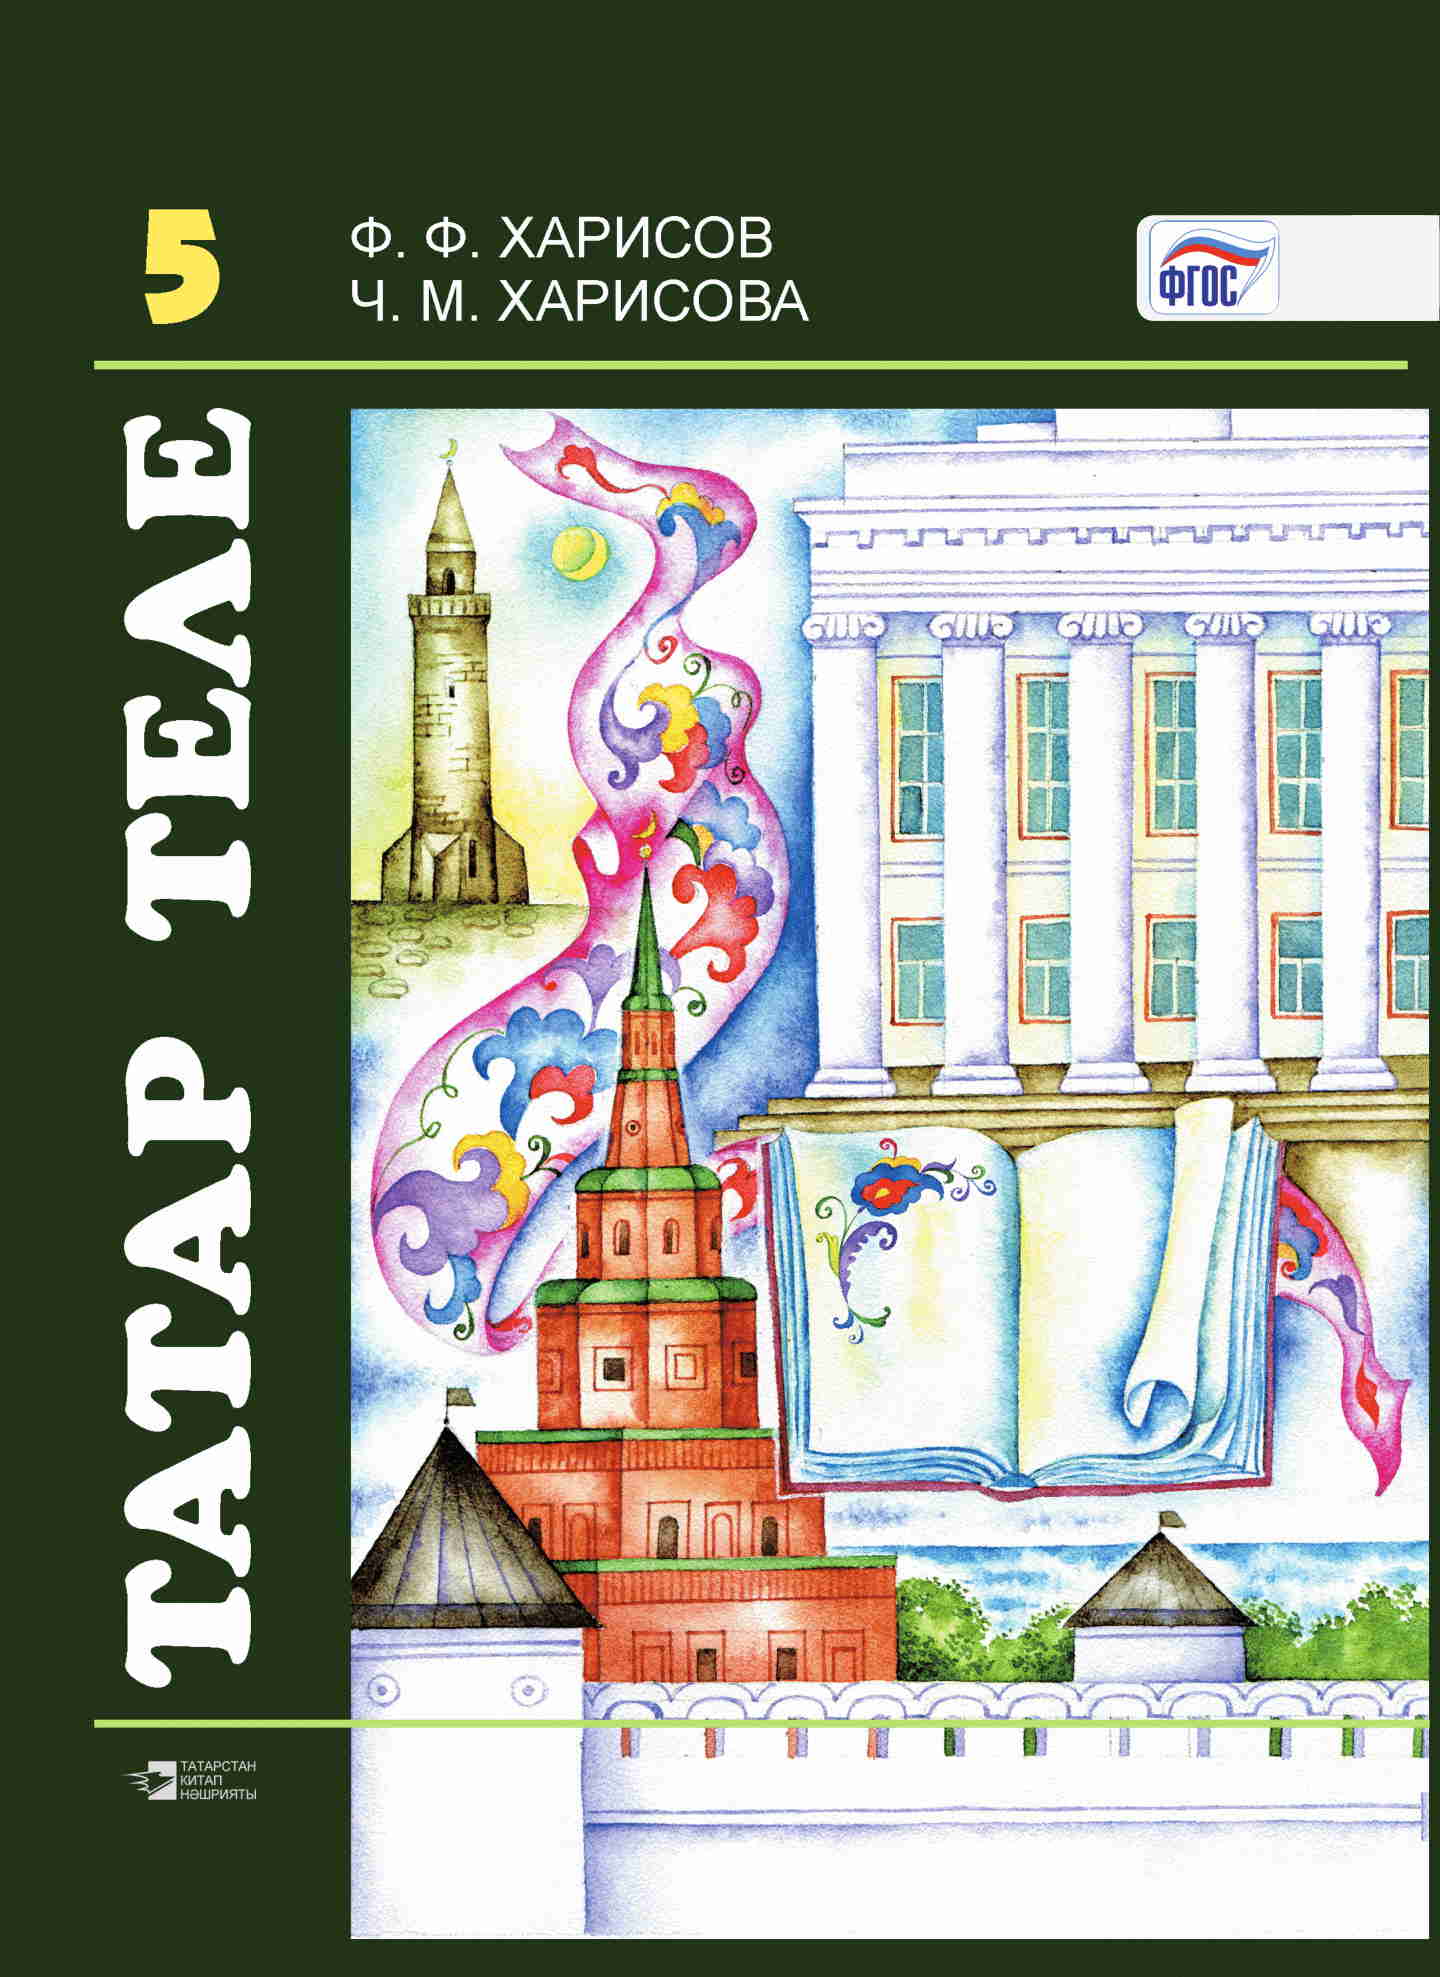 Татарский язык 7 класс страница